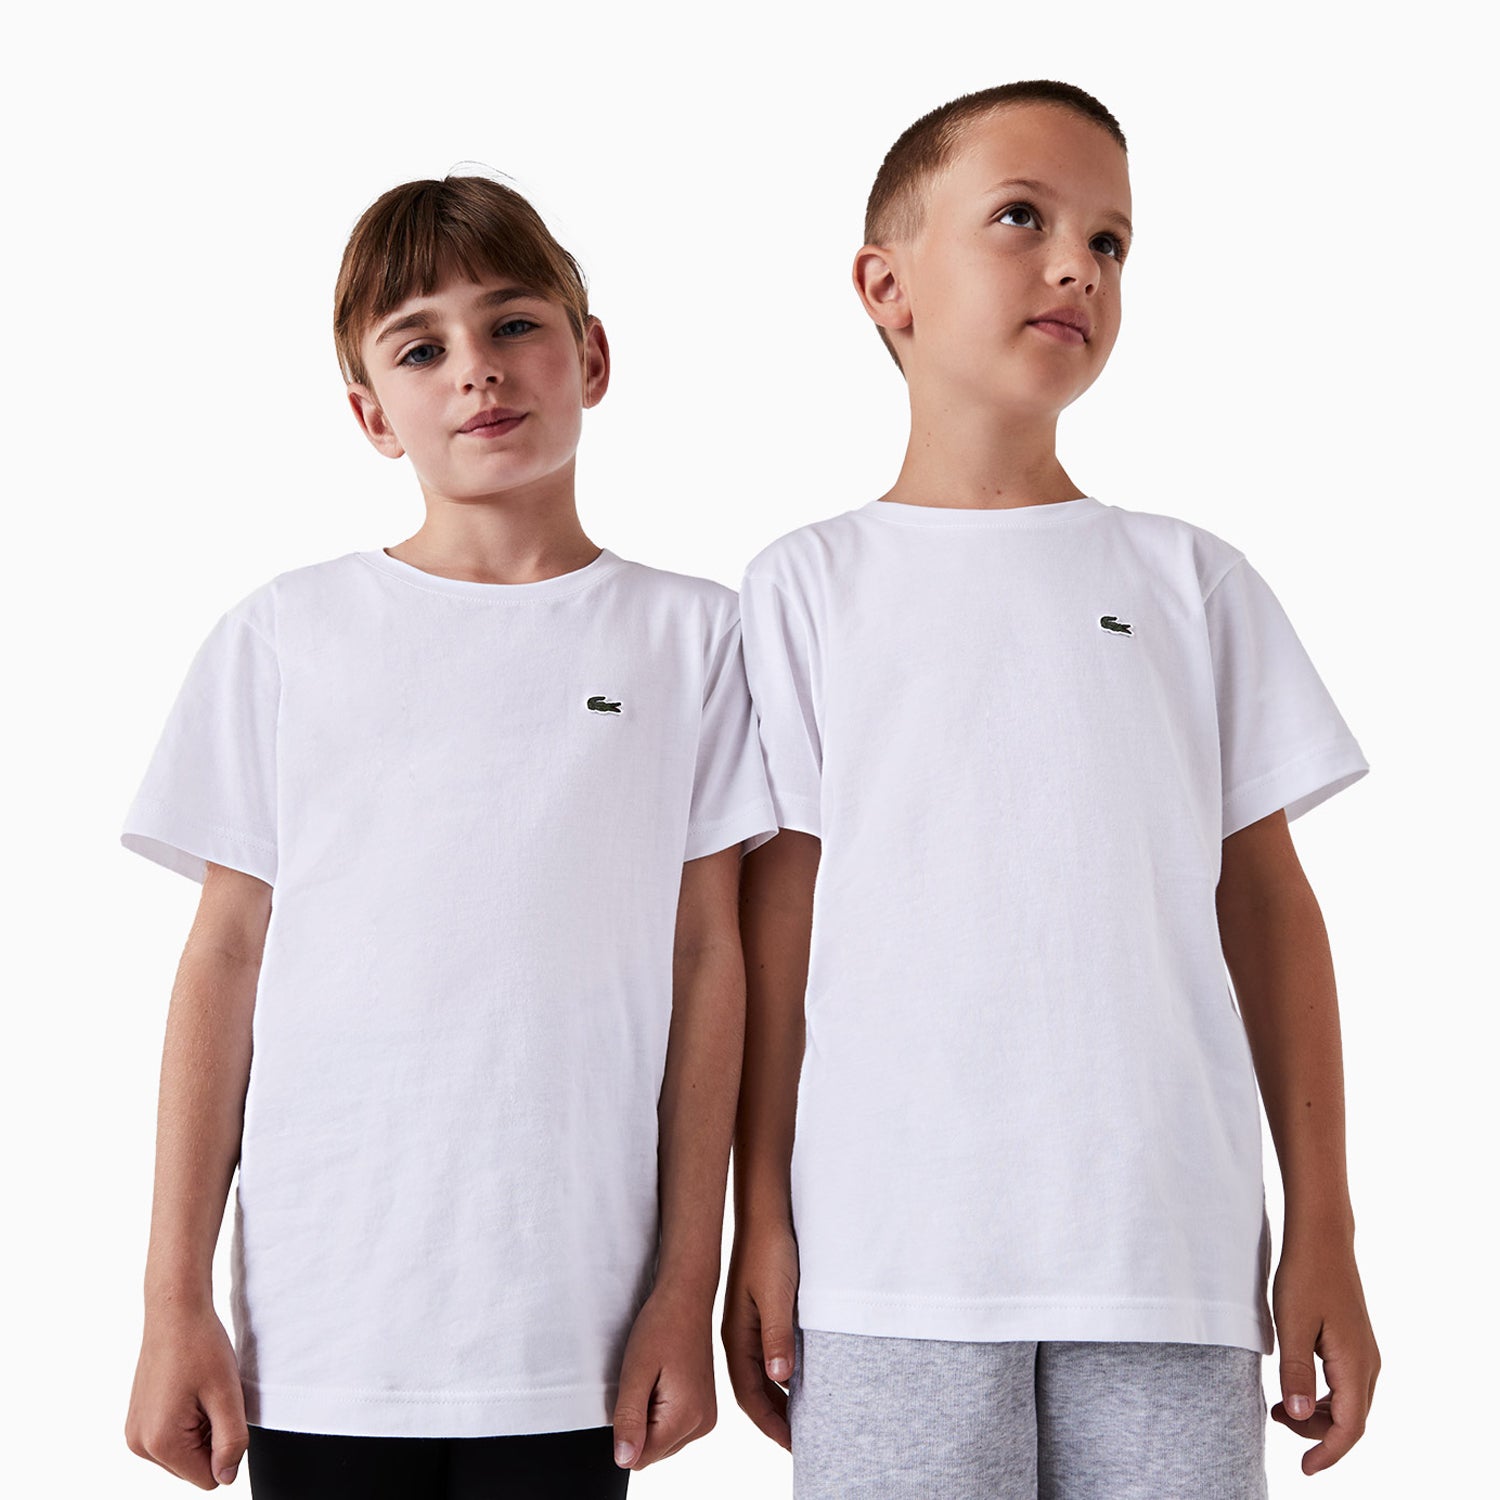 lacoste-kids-jersey-t-shirt-tj1442-001